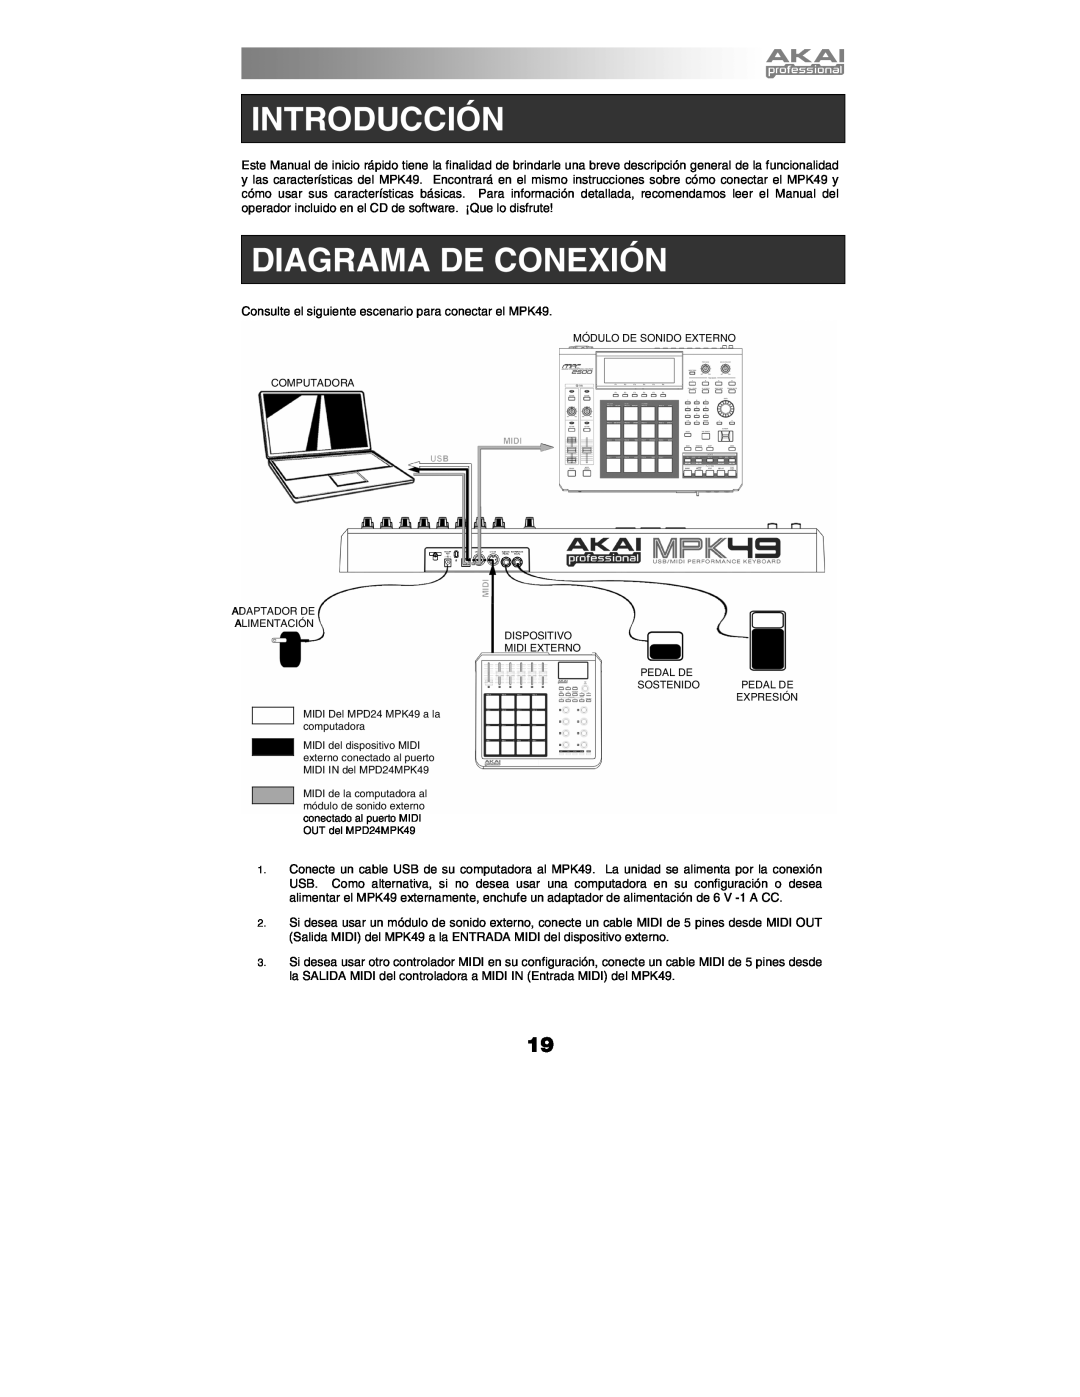 Akai MPK49 quick start manual Introducción, Diagrama De Conexión 